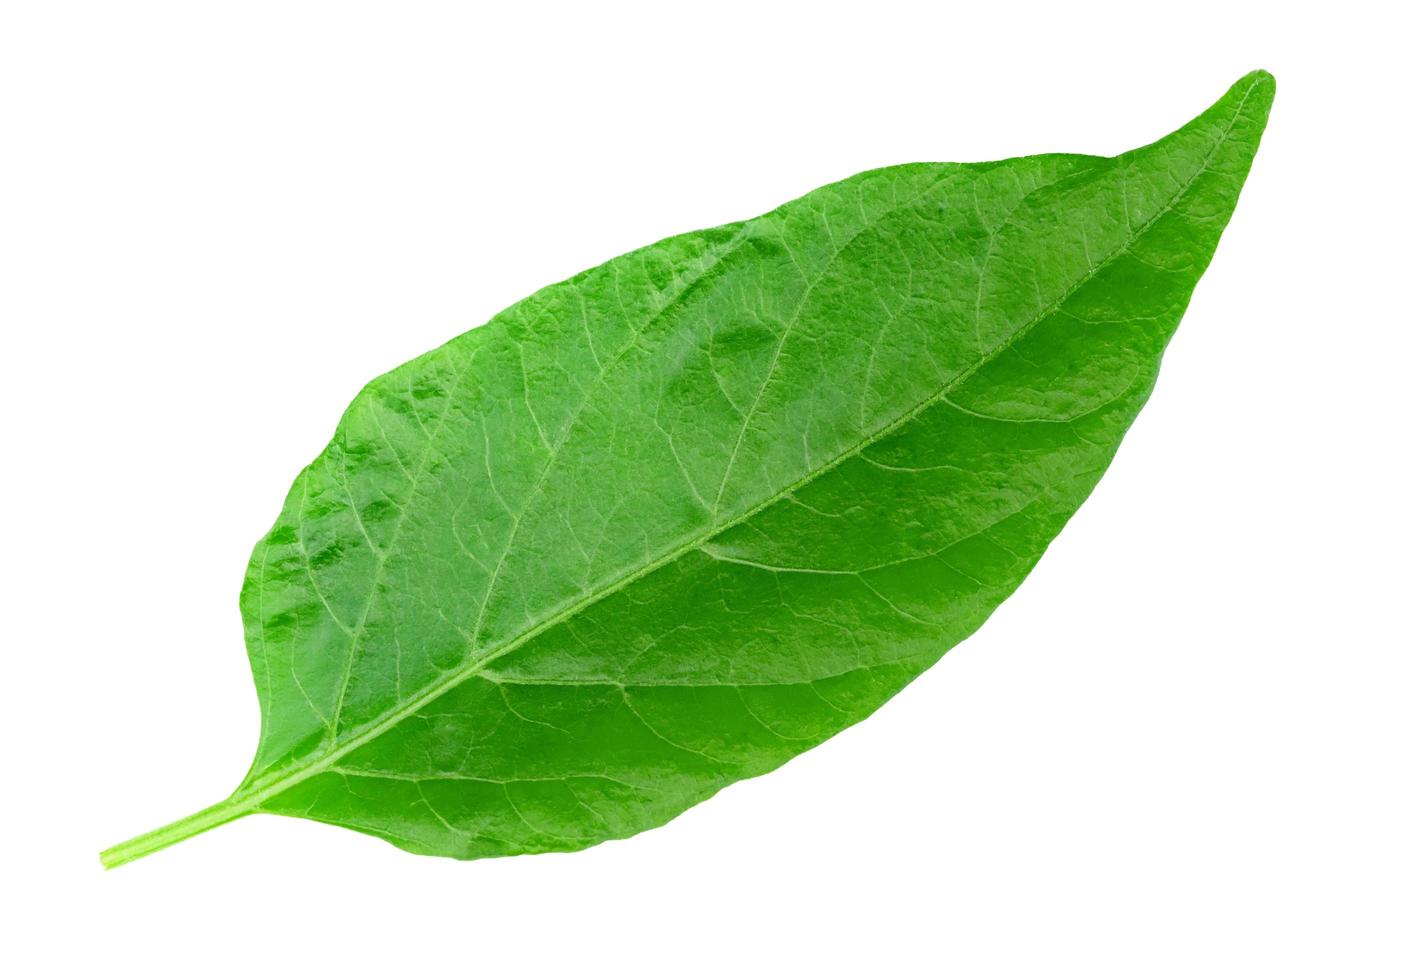 blad chili geïsoleerd op een witte achtergrond, groen van peper bladeren patroon foto